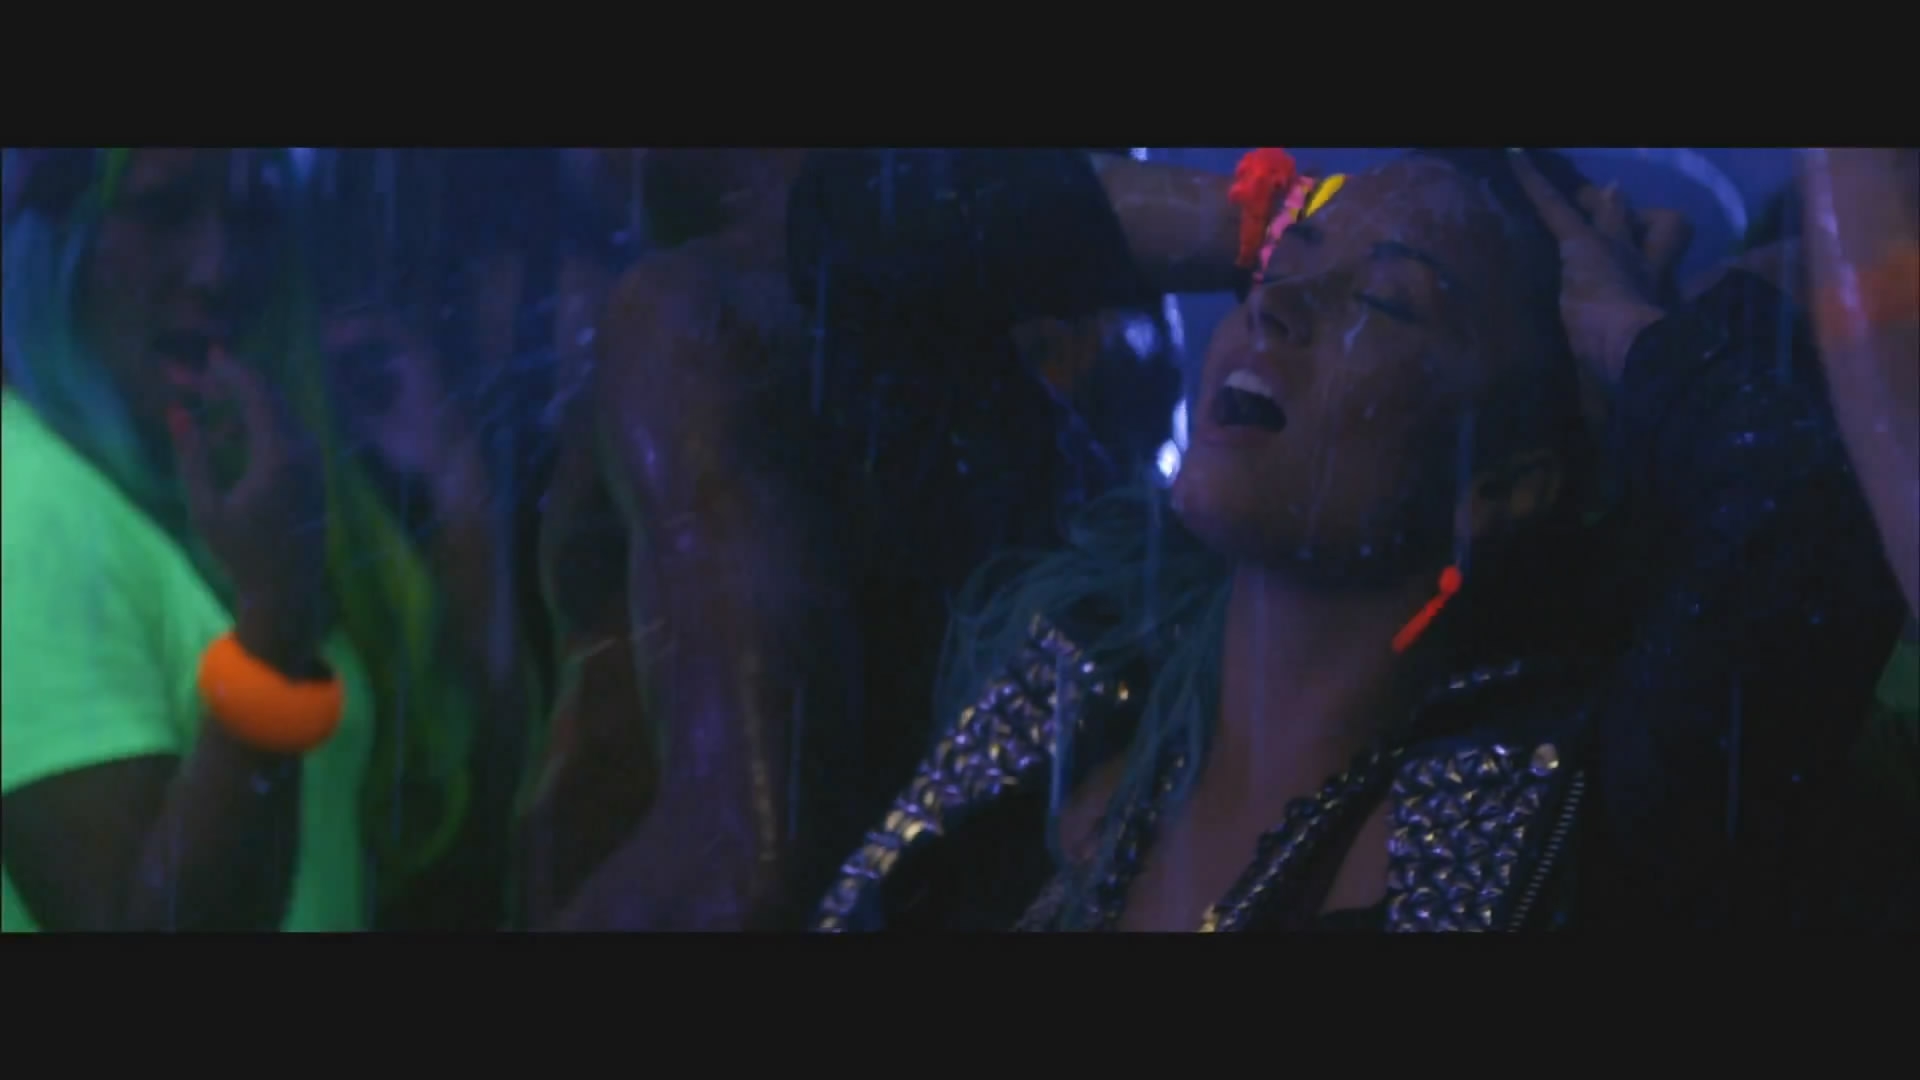 Demi Lovato in Music Video: Neon Lights